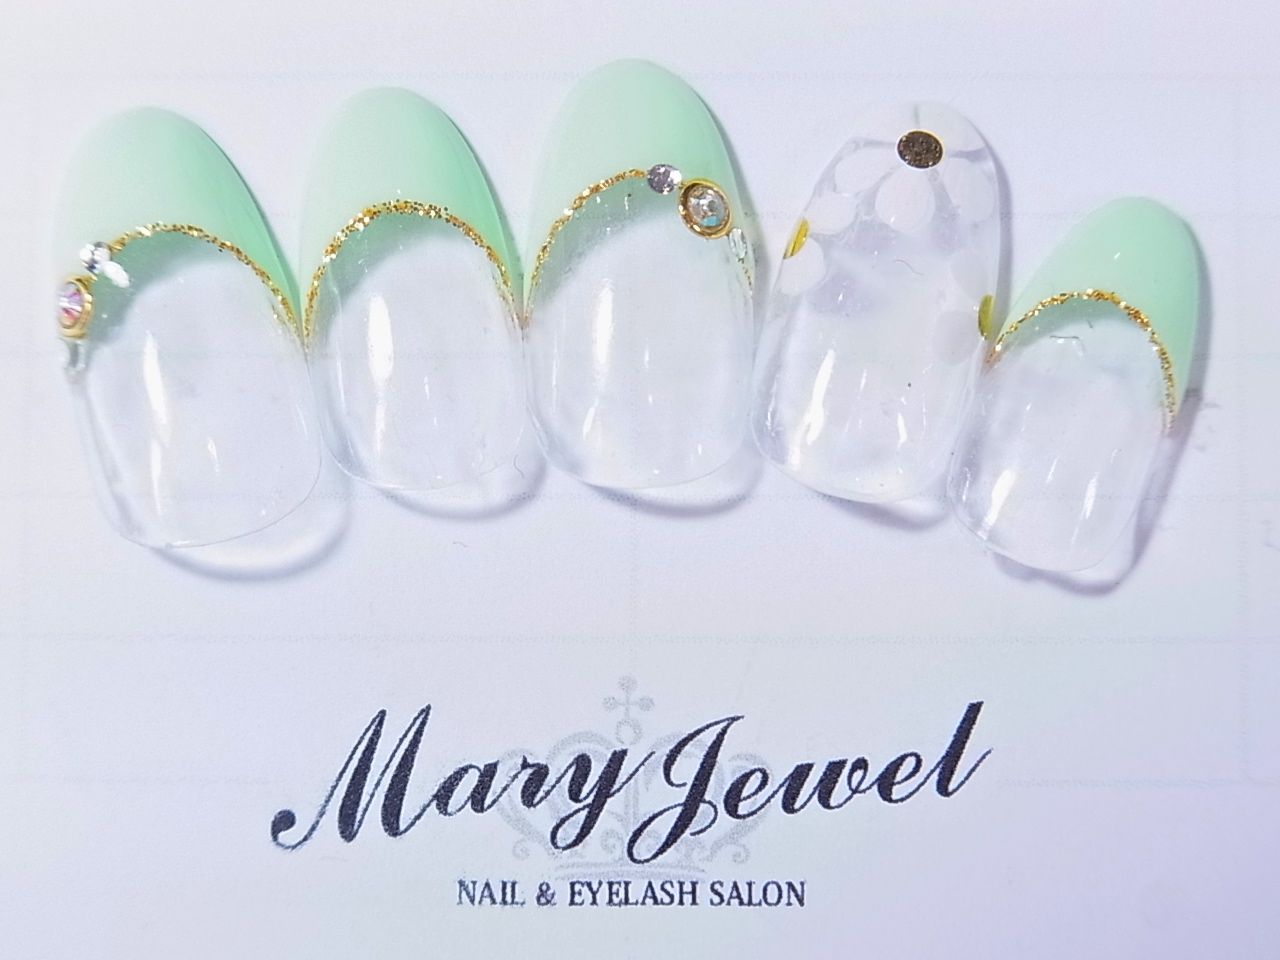 Mary-jewel